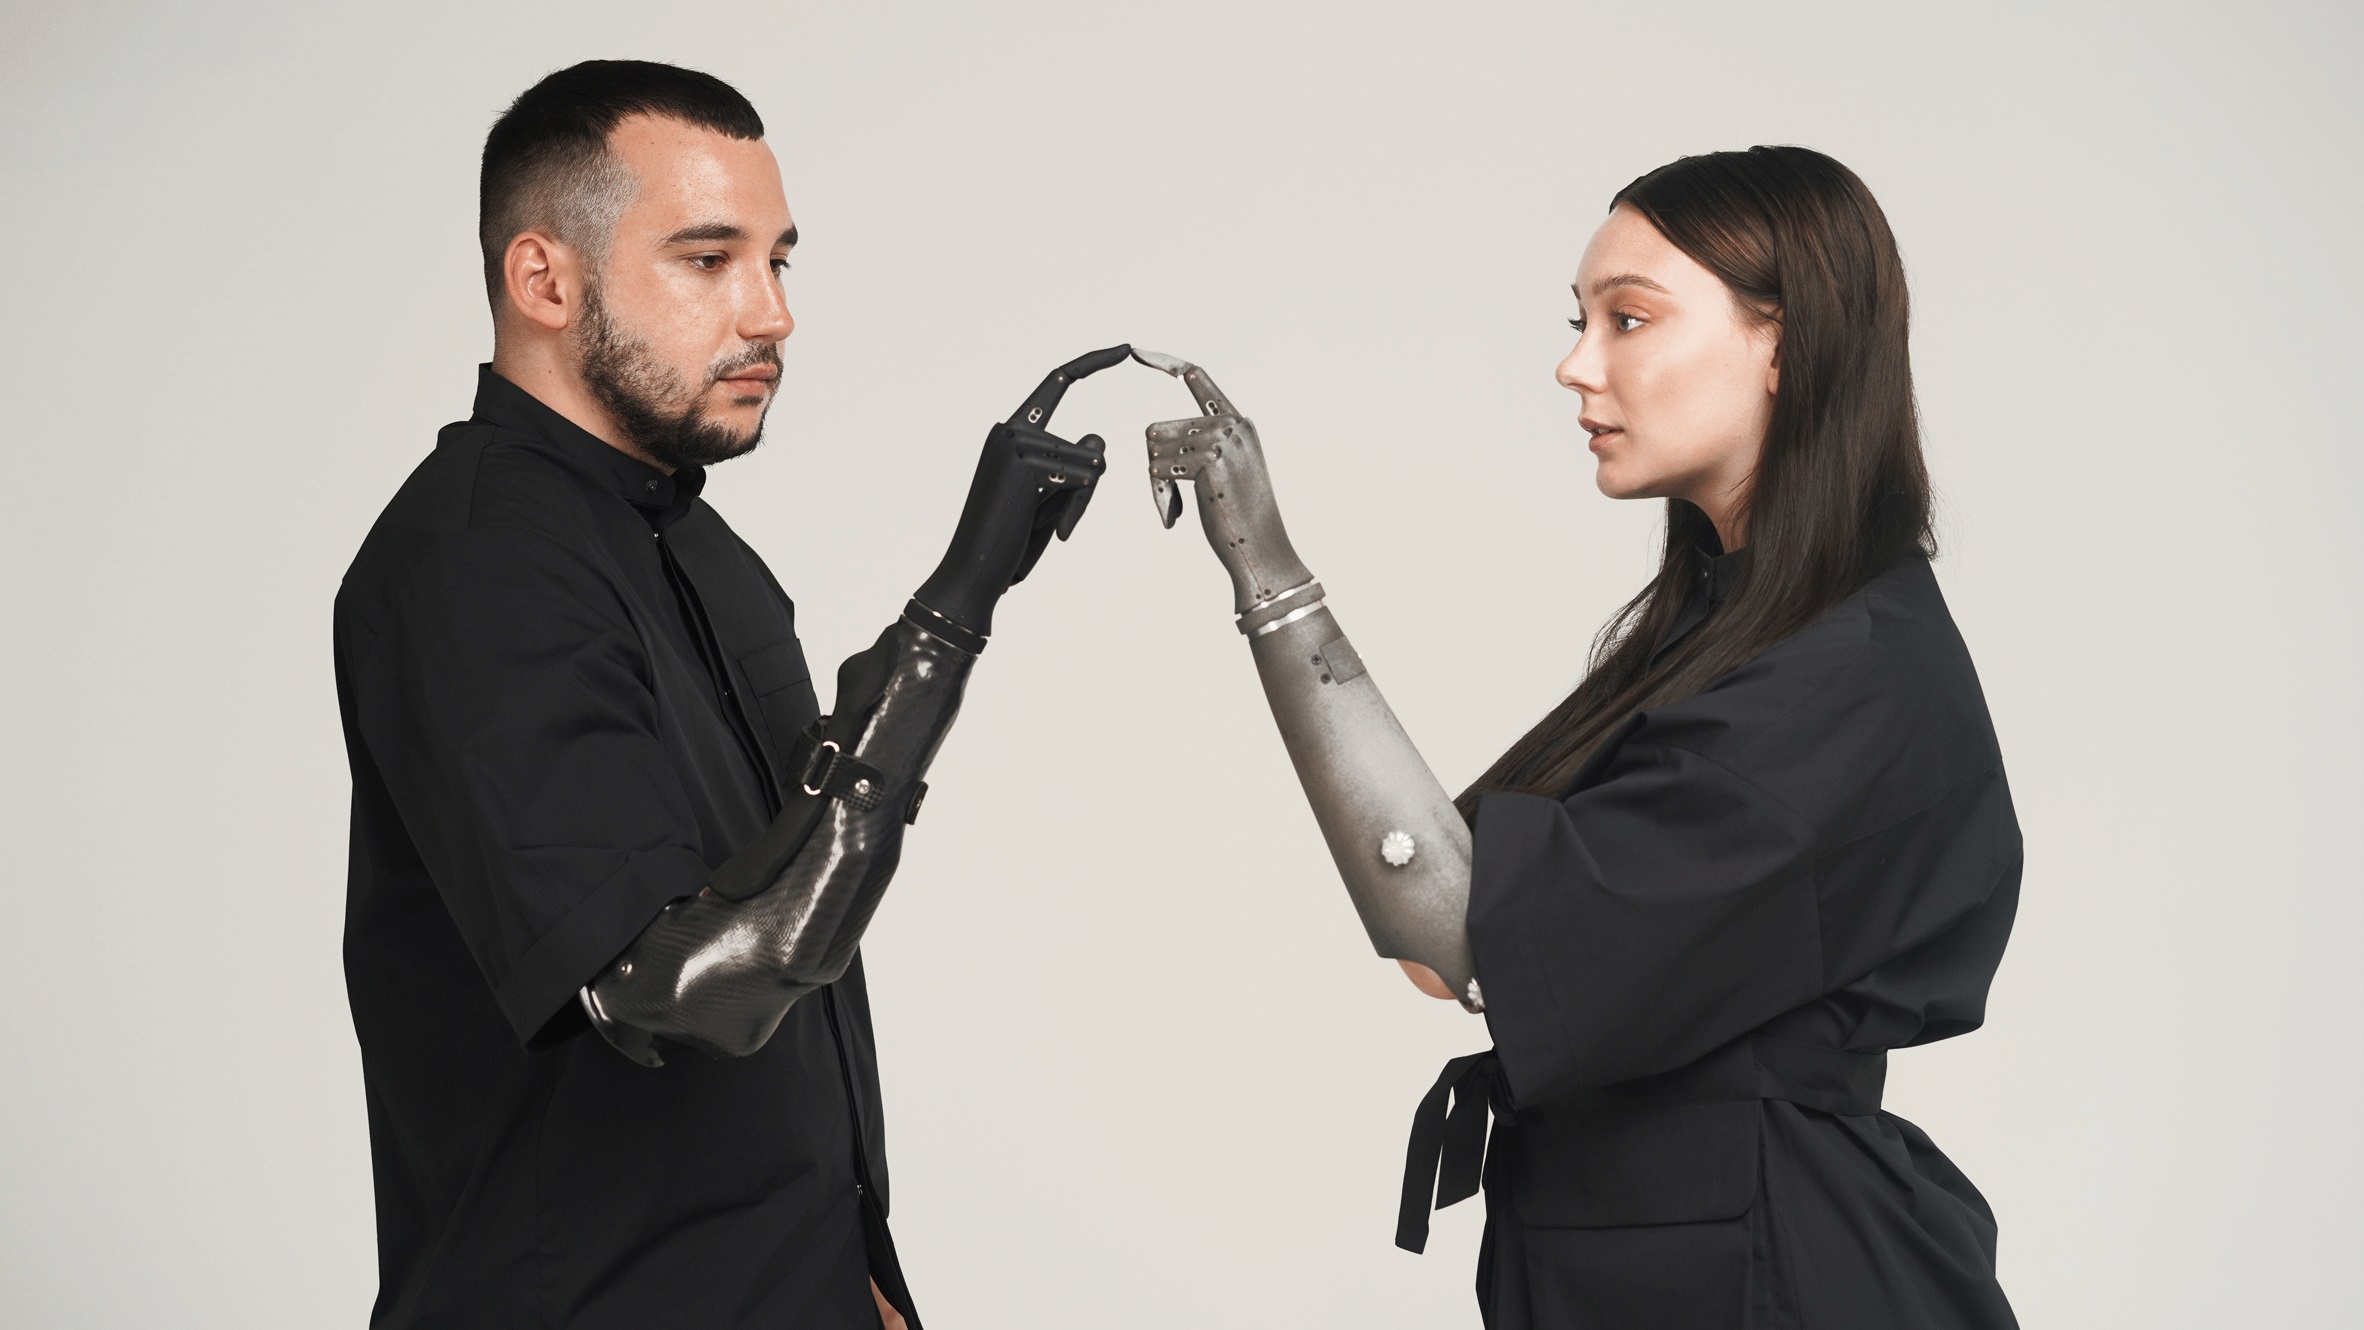 Das ukrainische Start-up-Unternehmen Esper Hand, ein prothetischer Roboterarm, gilt als eine der besten Erfindungen des Jahres 2022 und schaffte es auf die Titelseite von Time